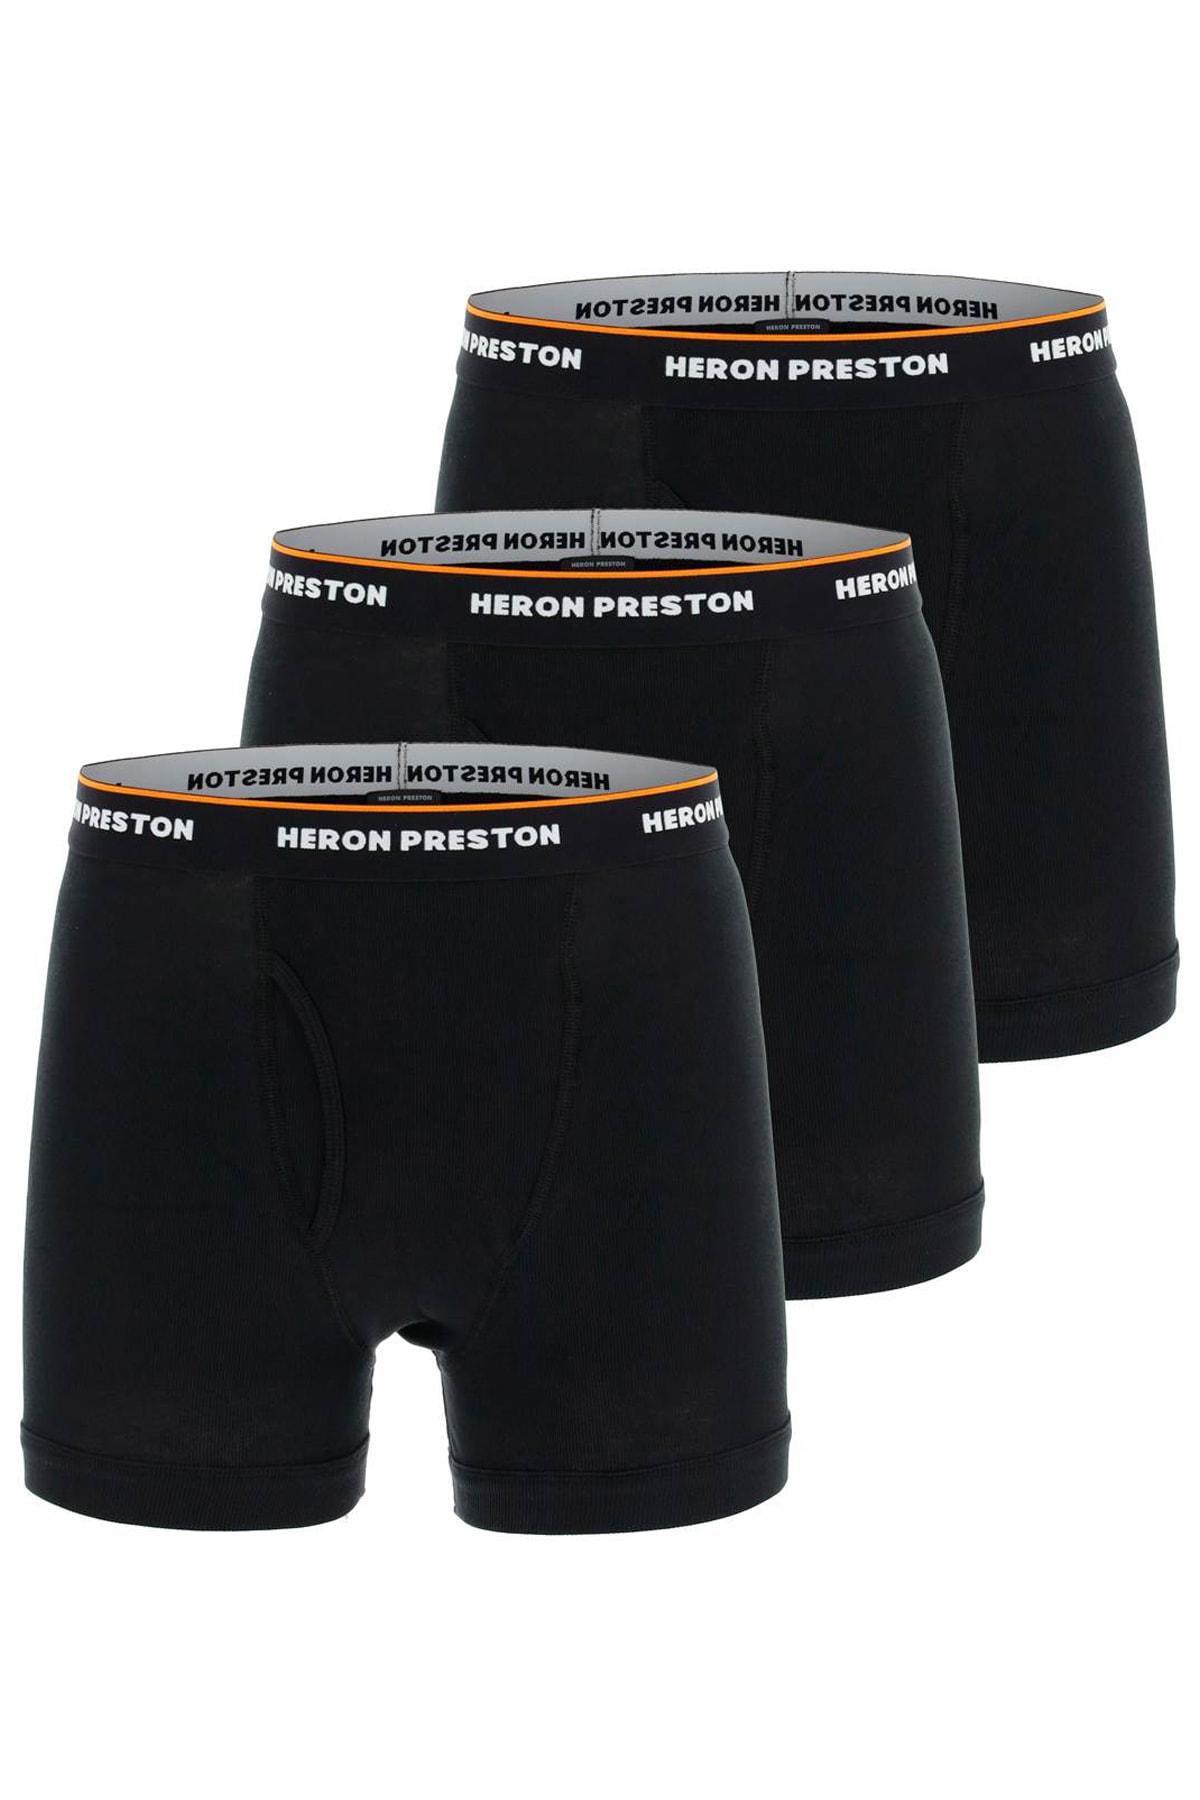 HERON PRESTON Underwear Trunk Tri-pack